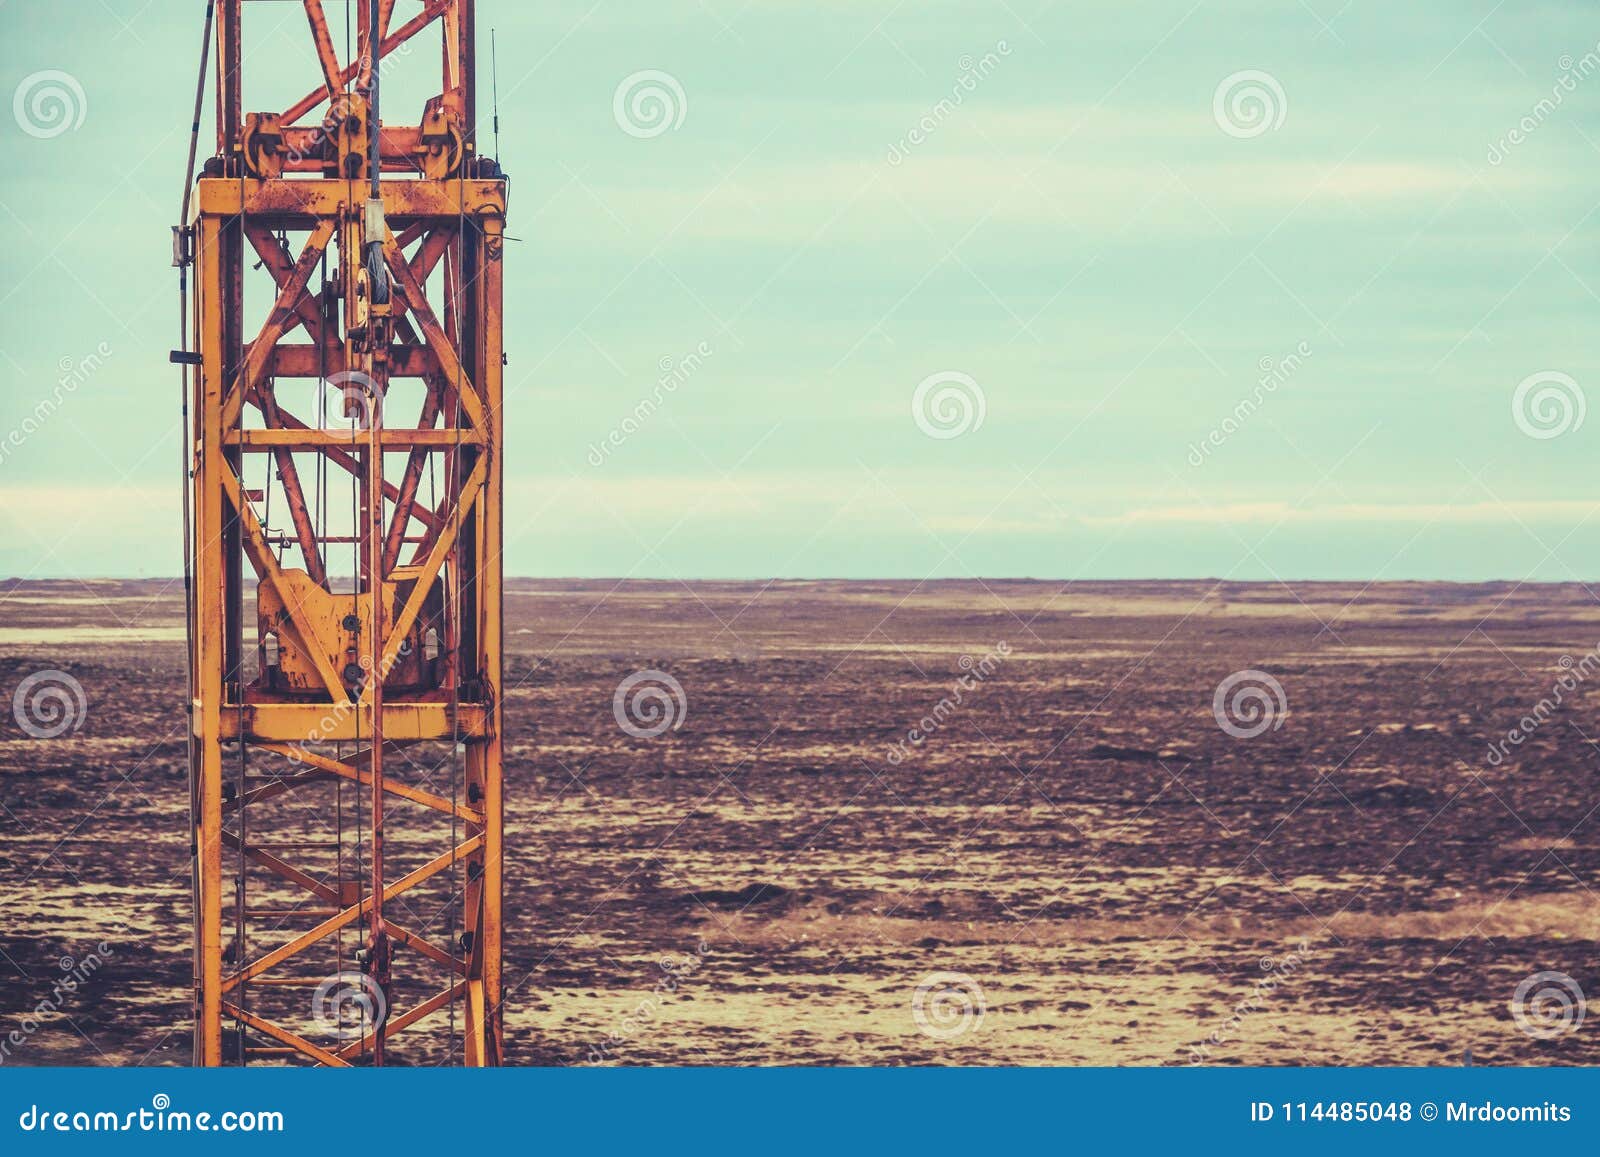 Texas Oil Field Machinery stockfoto. Bild von derrickkran - 114485048